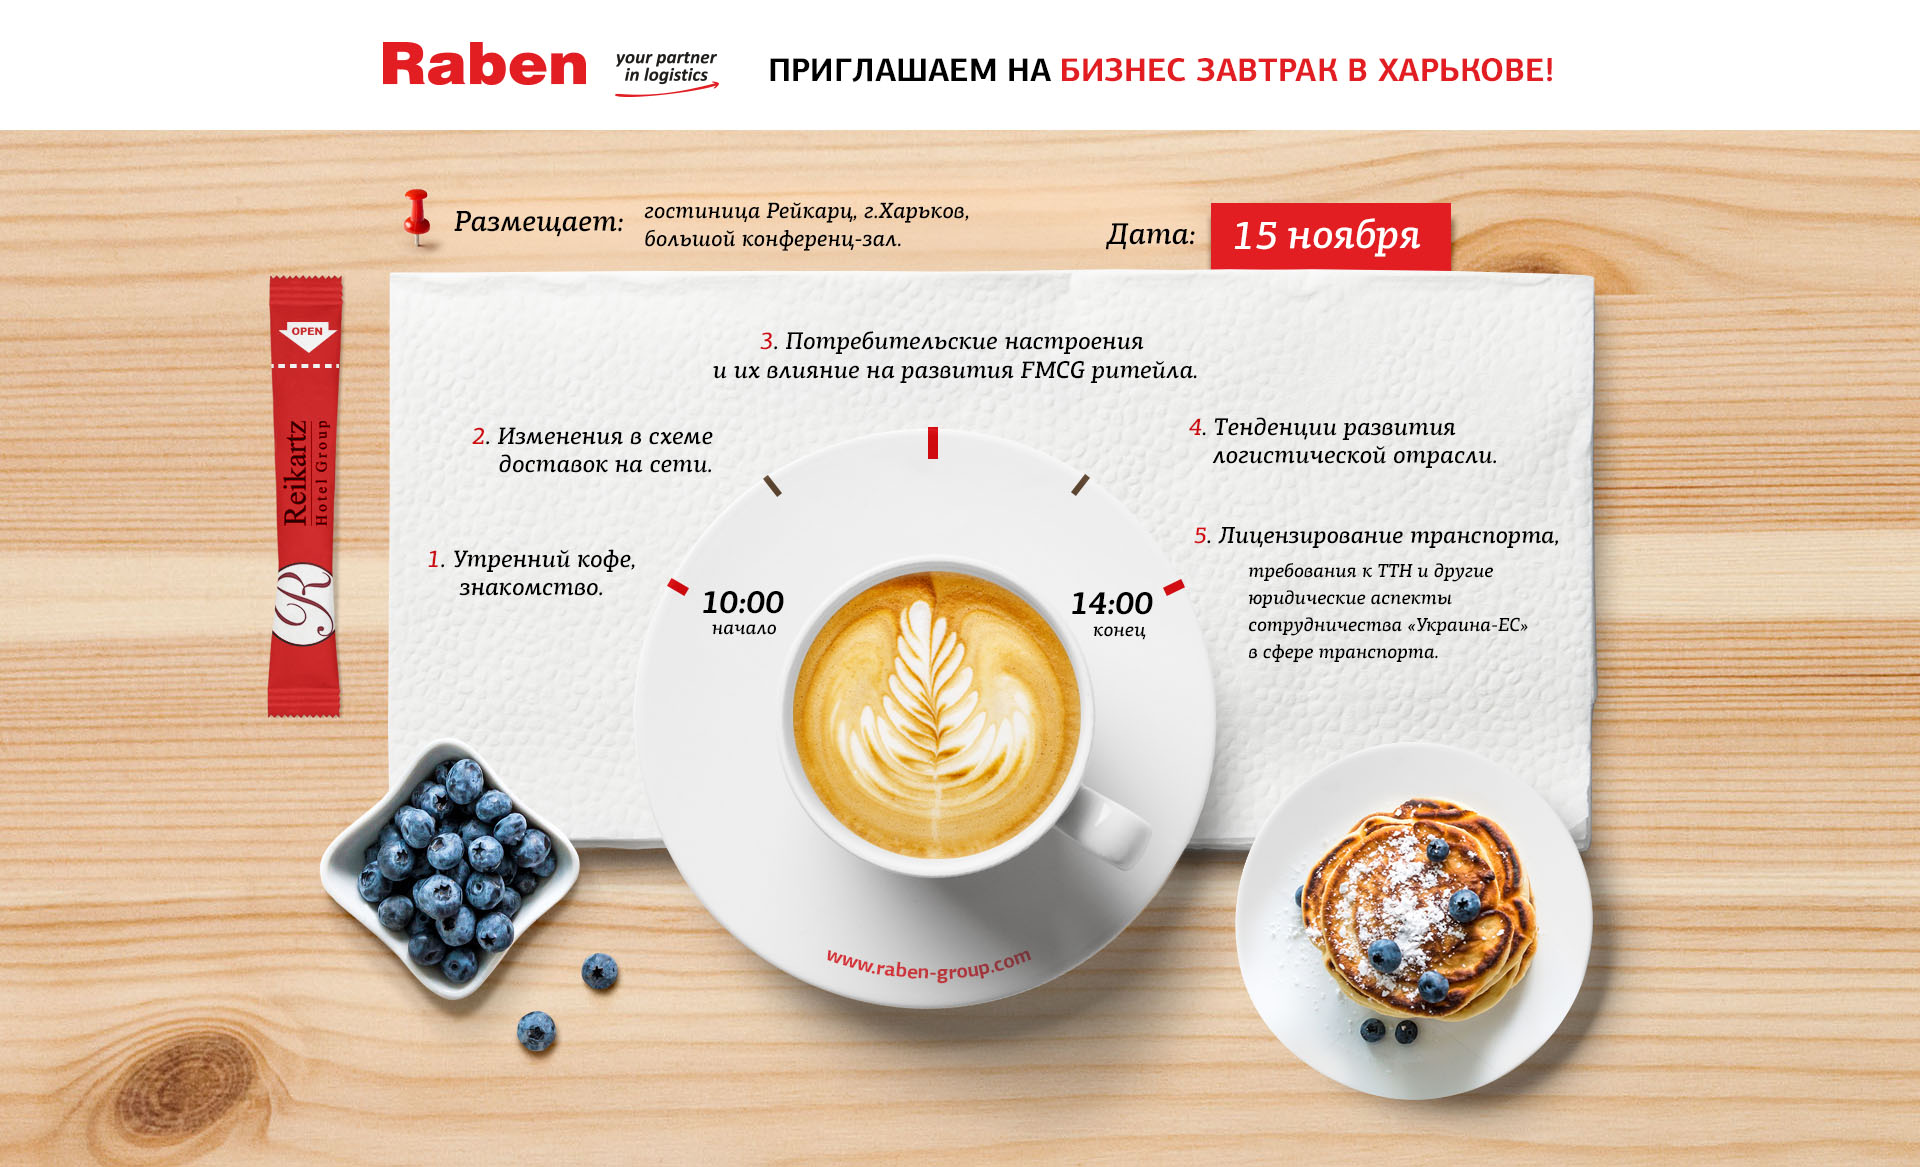 Пригласительный на бизнес завтрак в Харькове Raben Group